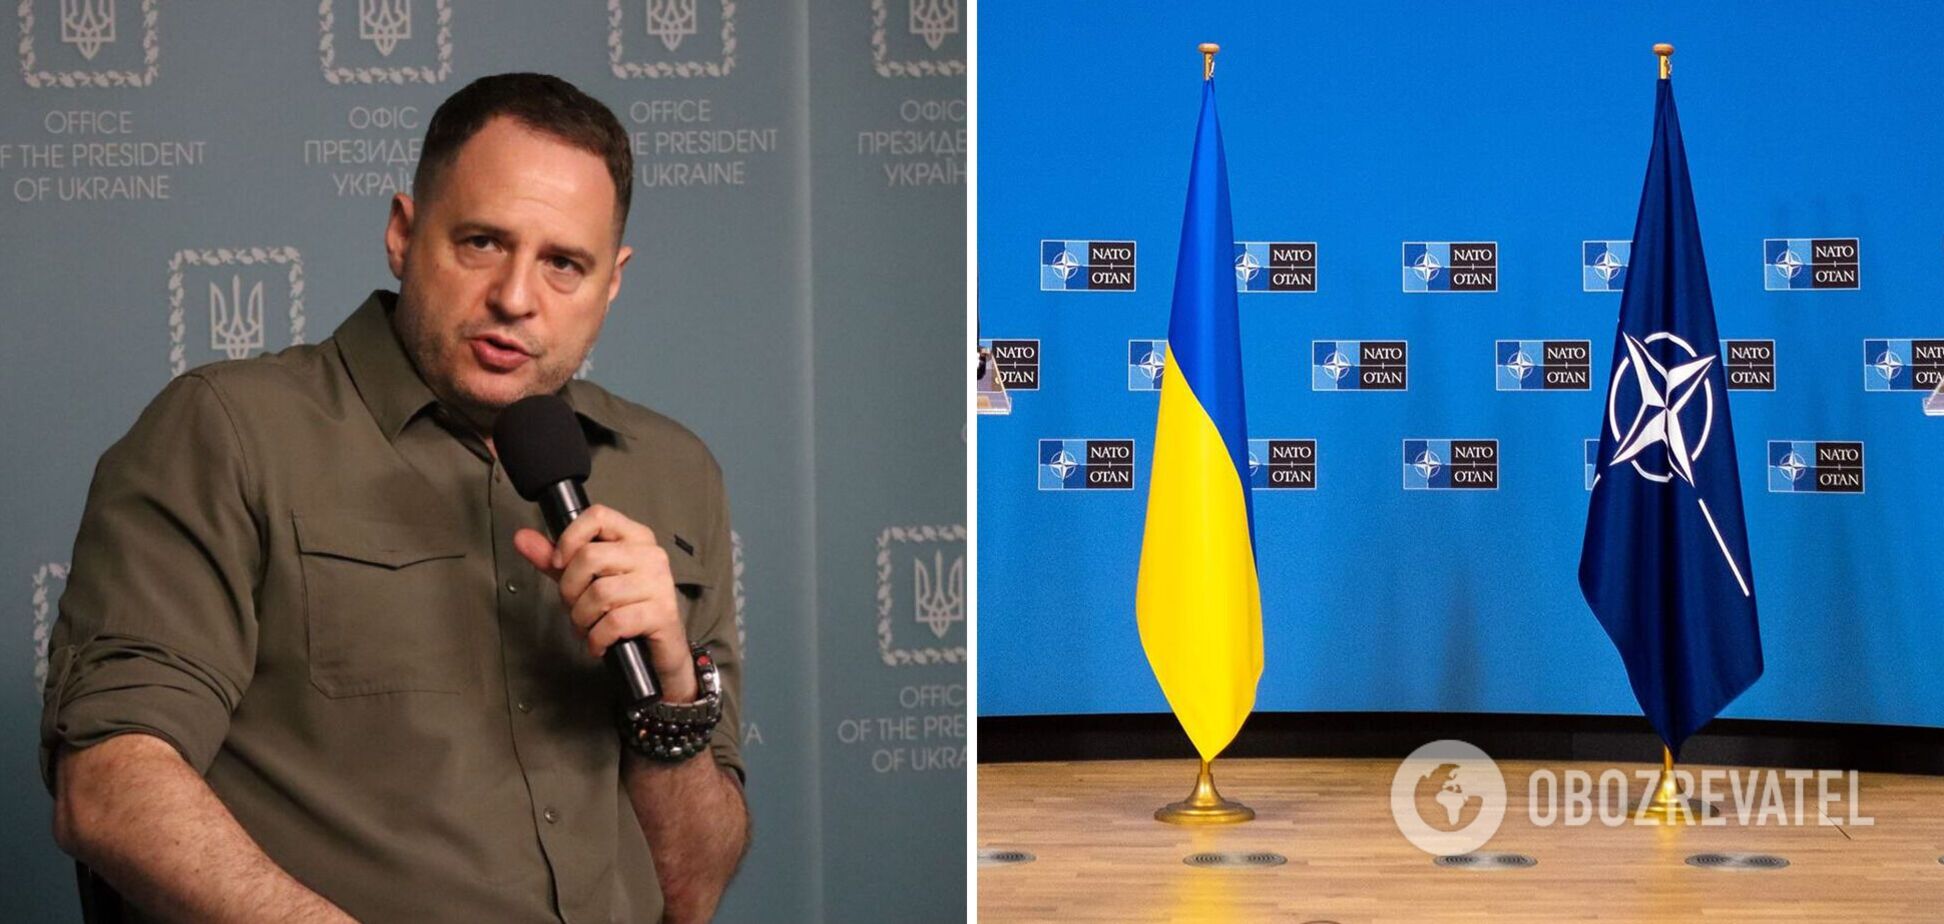 ОП: Україна розпочне переговори зі США про надання гарантій безпеки